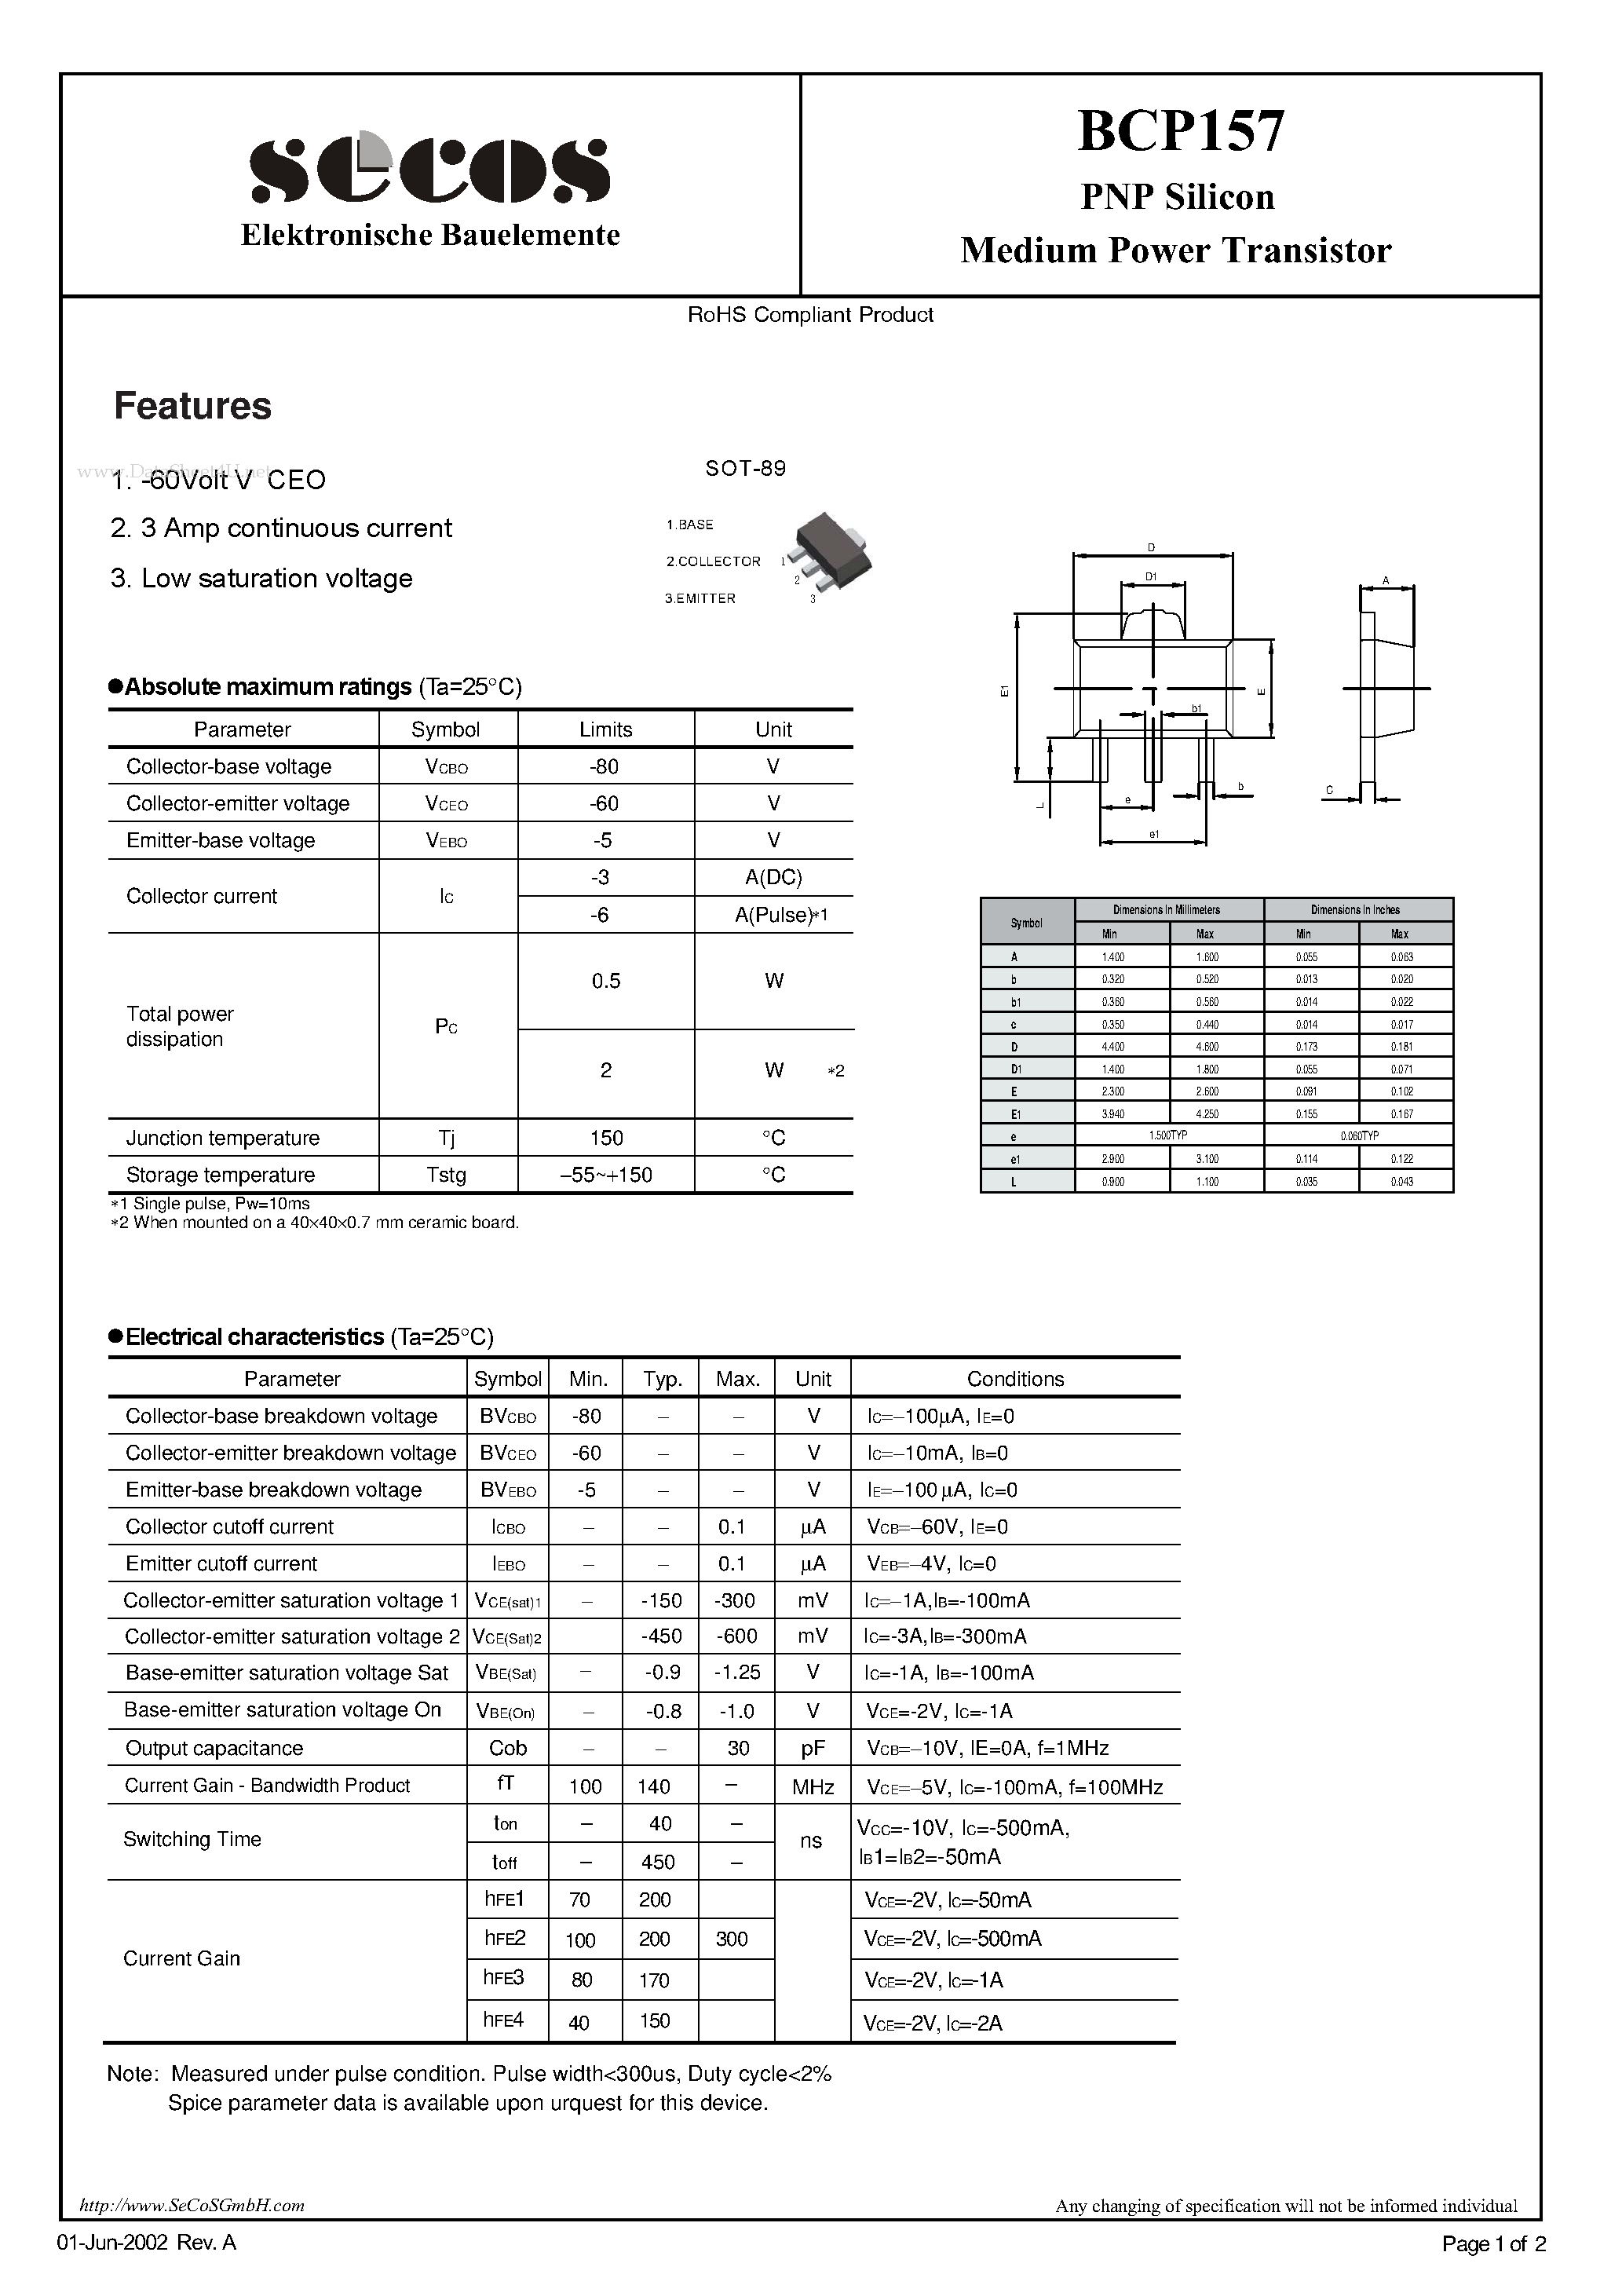 Даташит BCP157-Medium Power Transistor страница 1